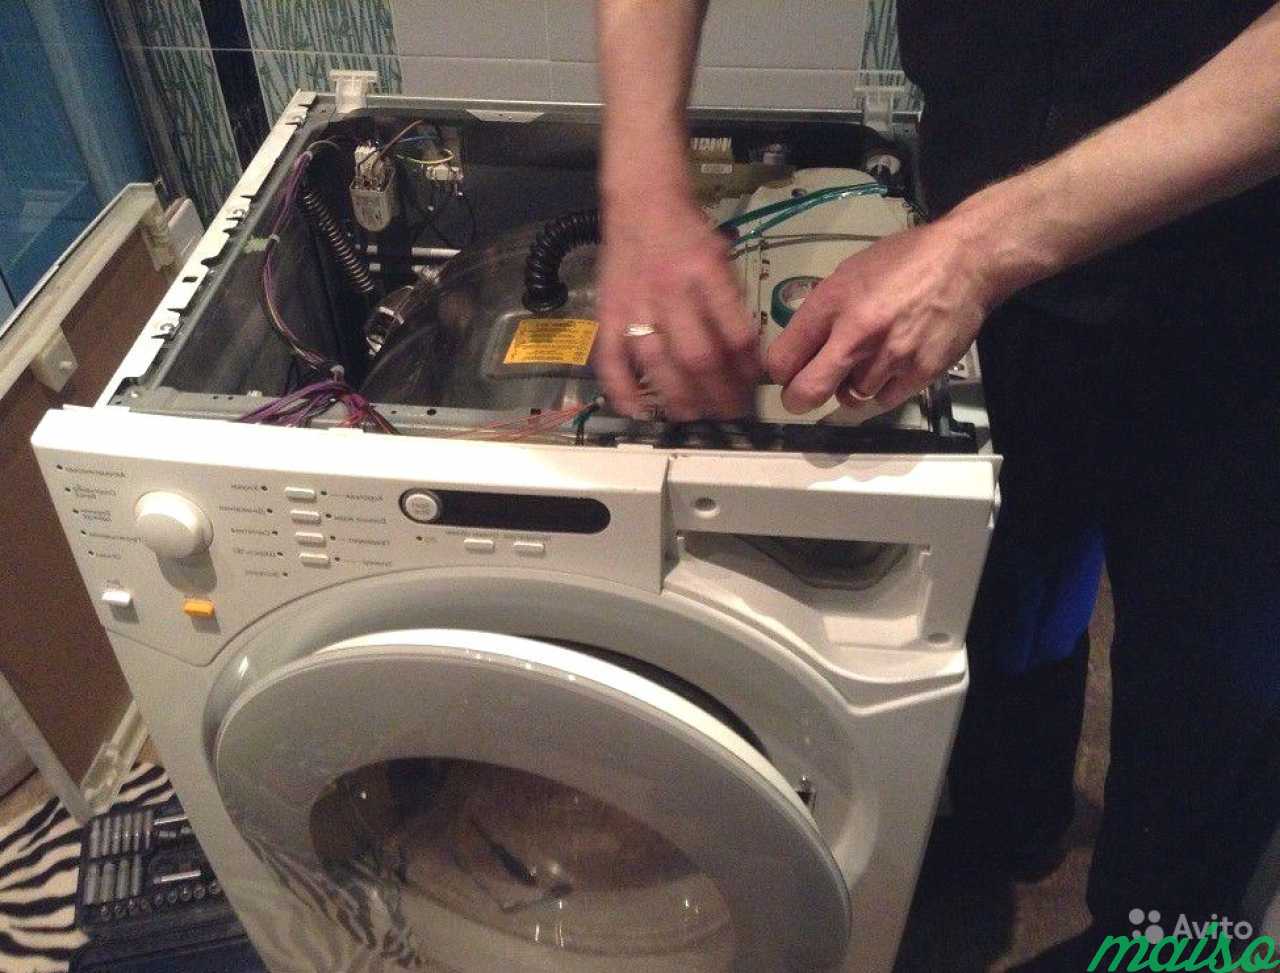 Ремонт стиральных машин красноармейский. Ремонт стиральных машин. Мастер по ремонту стиральных машинок. Мастер по стиральным машинам. Сломалась стиральная машина.